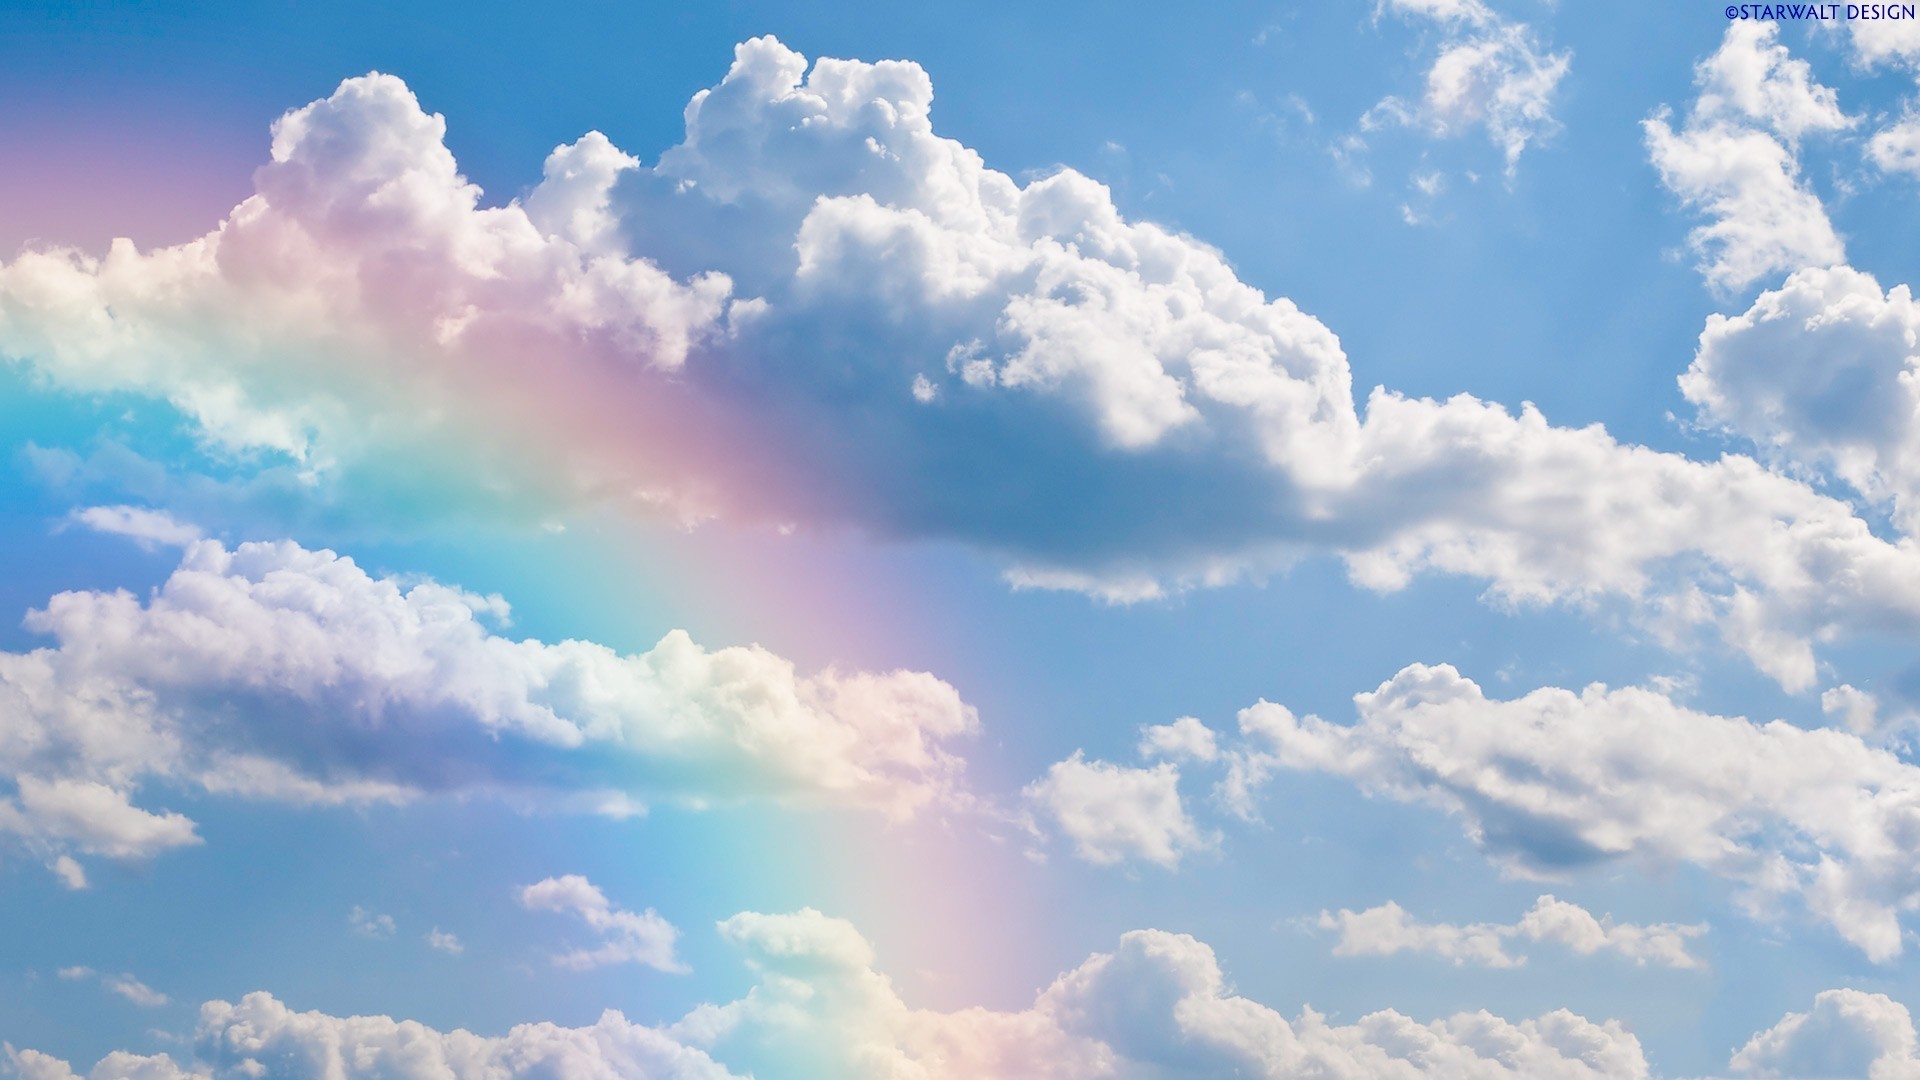 Vòng cung sau mưa trên trời xanh là khung cảnh tuyệt đẹp không thể thiếu trong bộ sưu tập tuyệt vời về Rainbow in sky. Hãy cùng khám phá khung cảnh tuyệt đẹp, đầy màu sắc này để cảm thấy sự chiêm nghiệm tuyệt vời của thiên nhiên và tình yêu của bạn dành cho vẻ đẹp tự nhiên.